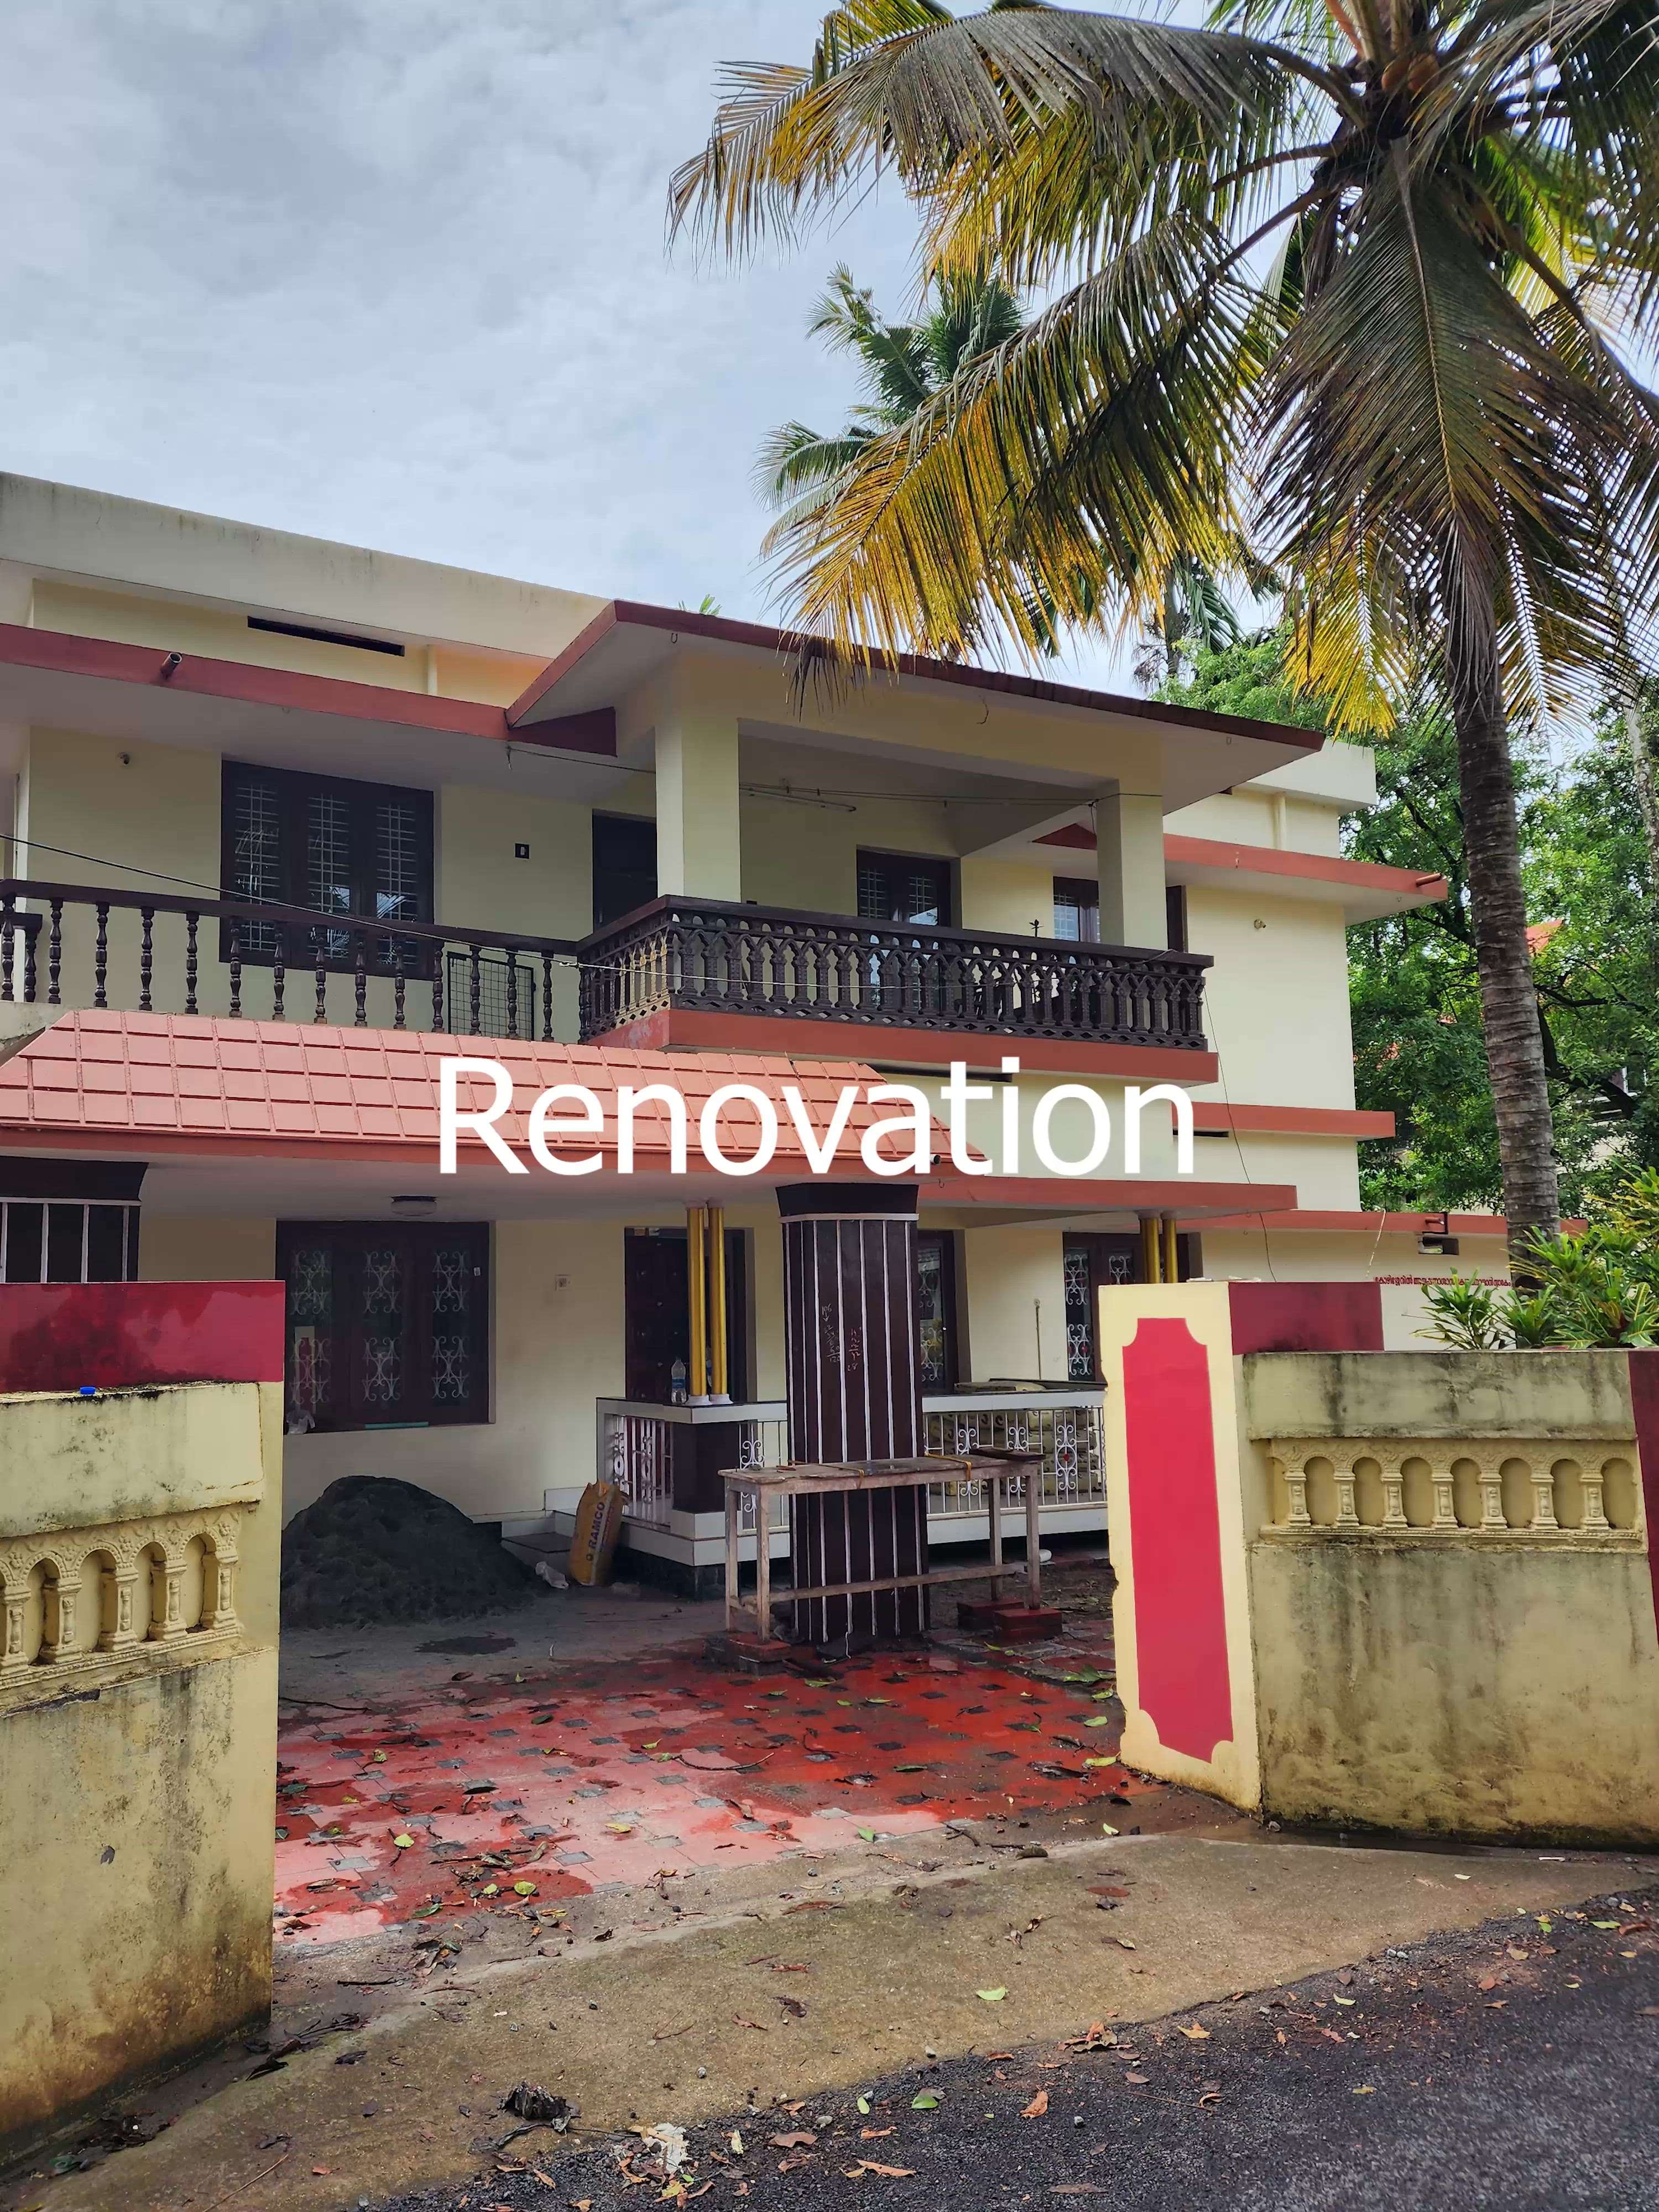 #creatorsofkolo #renovation
#beforeandafter #home #Budget #Alappuzha  #Kollam  #Kottayam  #Ernakulam  #Kozhikode  #HouseConstruction